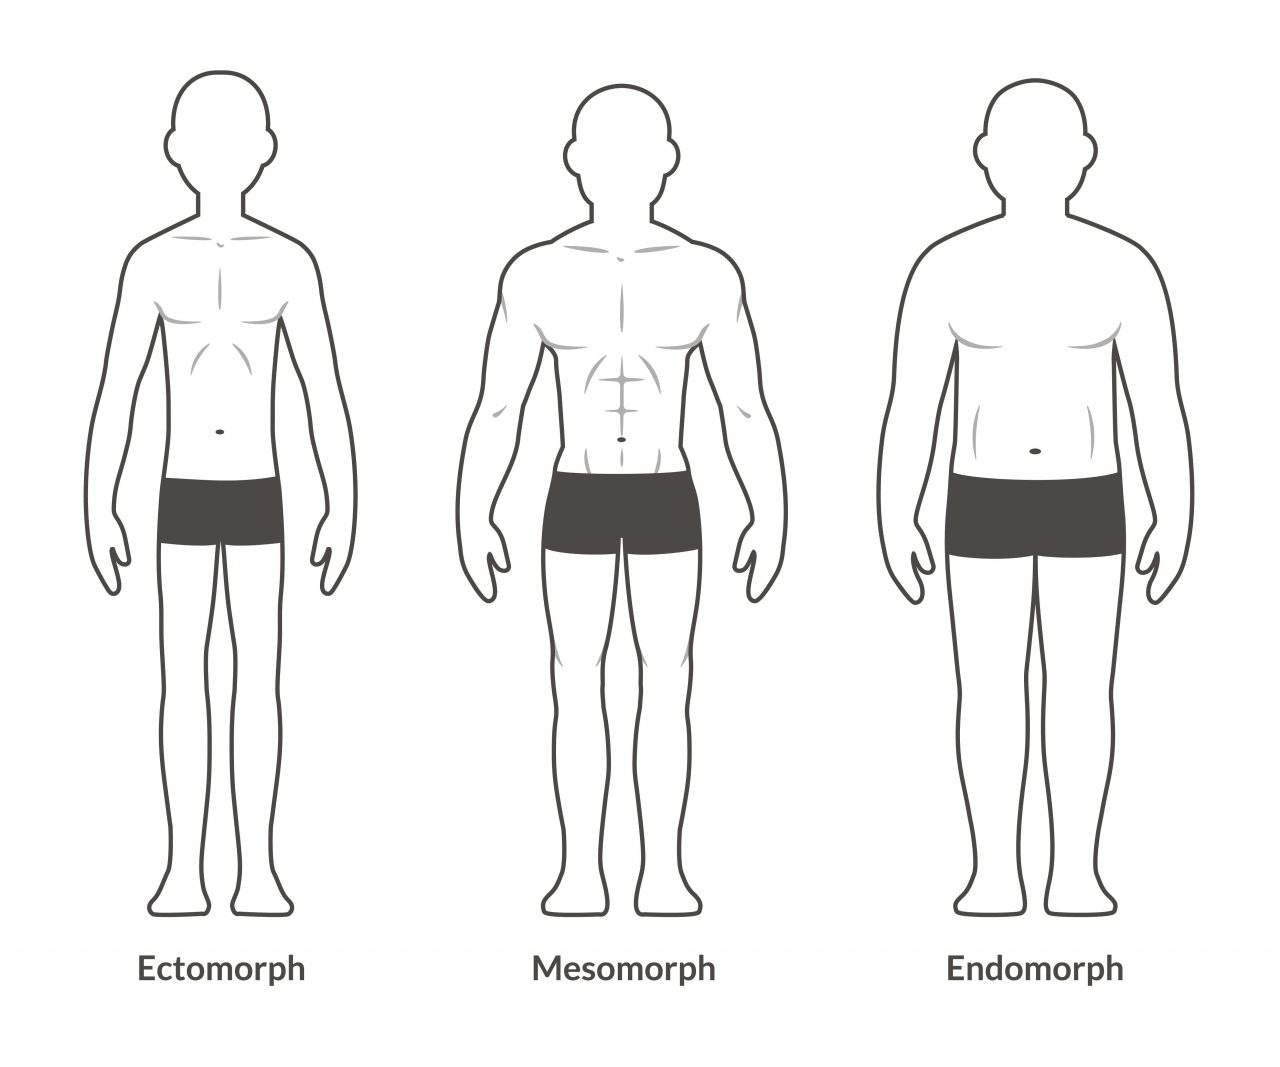 Dieta para endomorfo: O que é e benefícios - Vitat